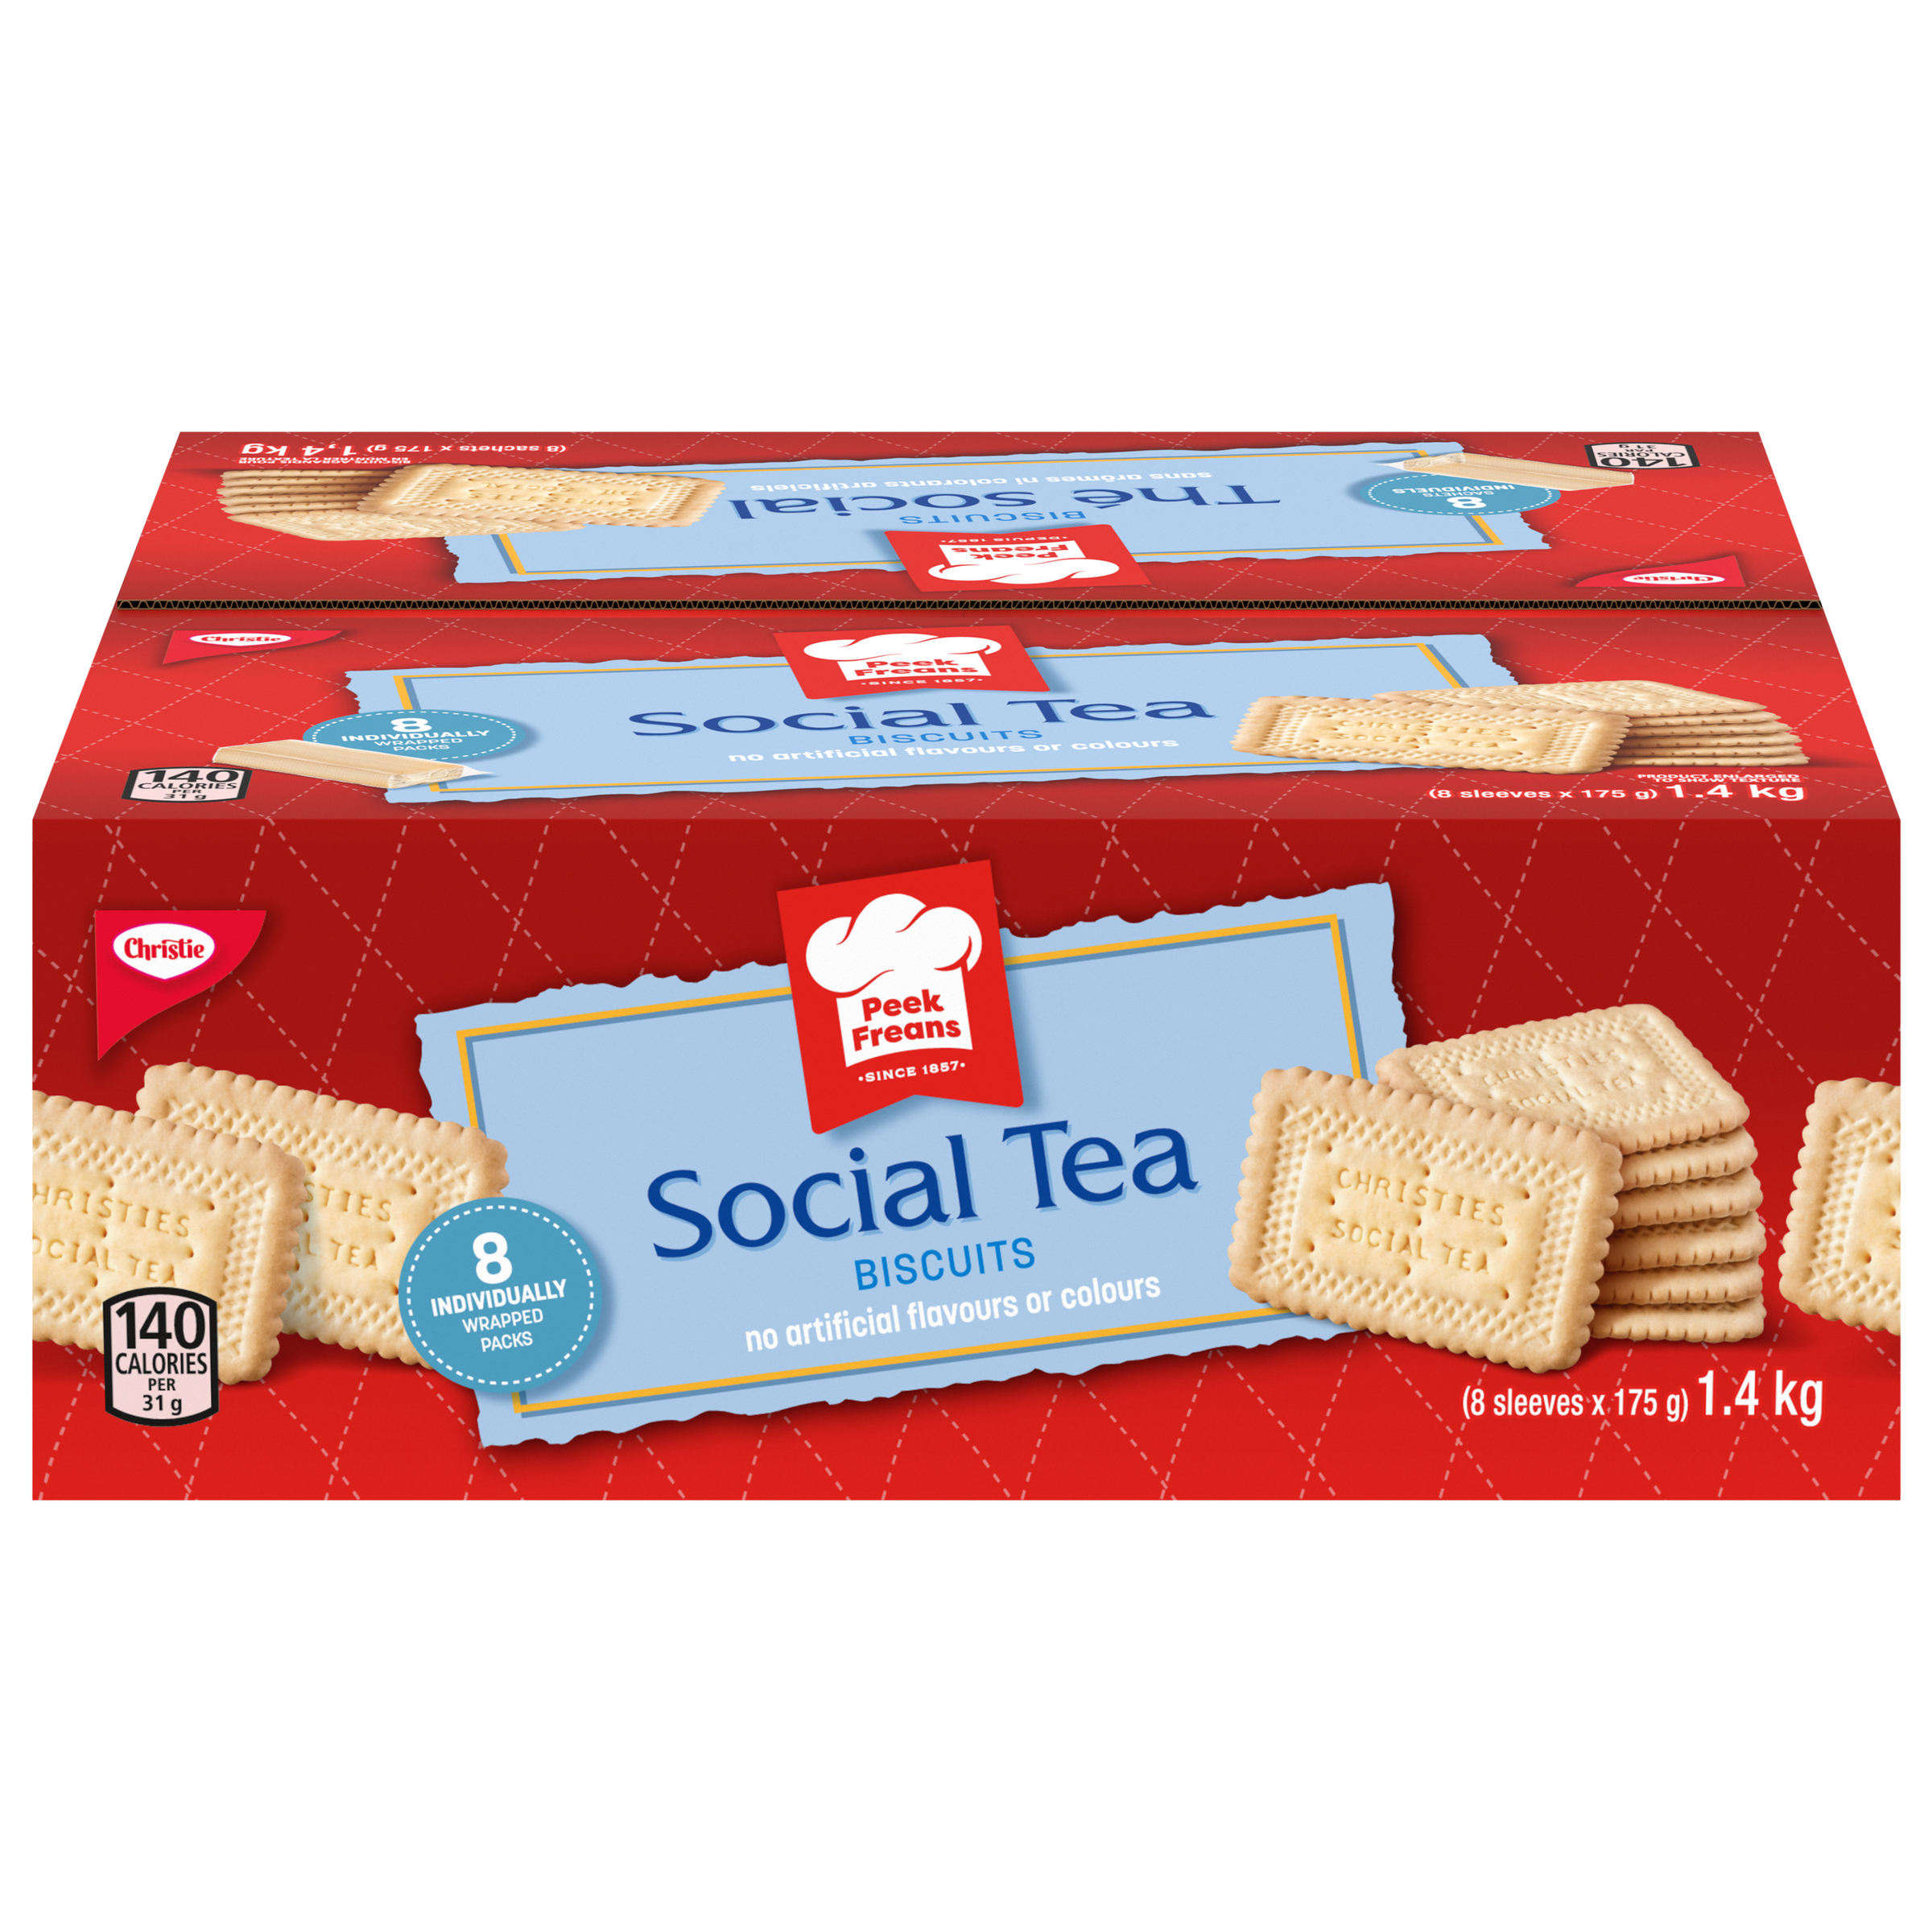 Peek Freans Social Tea Biscuits 1.4 KG